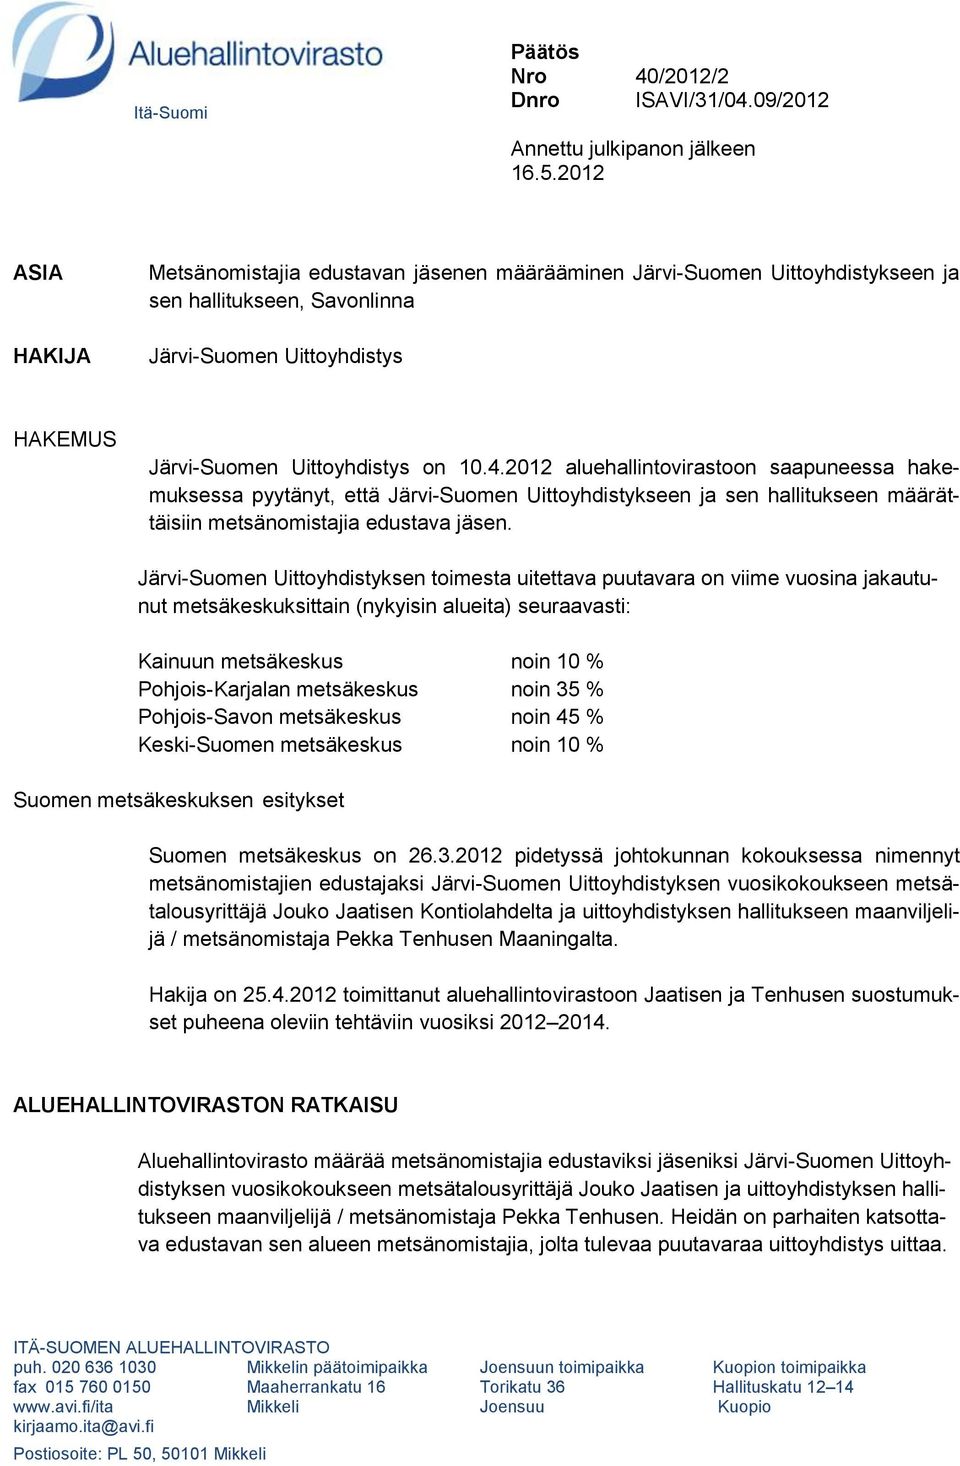 2012 aluehallintovirastoon saapuneessa hakemuksessa pyytänyt, että Järvi-Suomen Uittoyhdistykseen ja sen hallitukseen määrättäisiin metsänomistajia edustava jäsen.